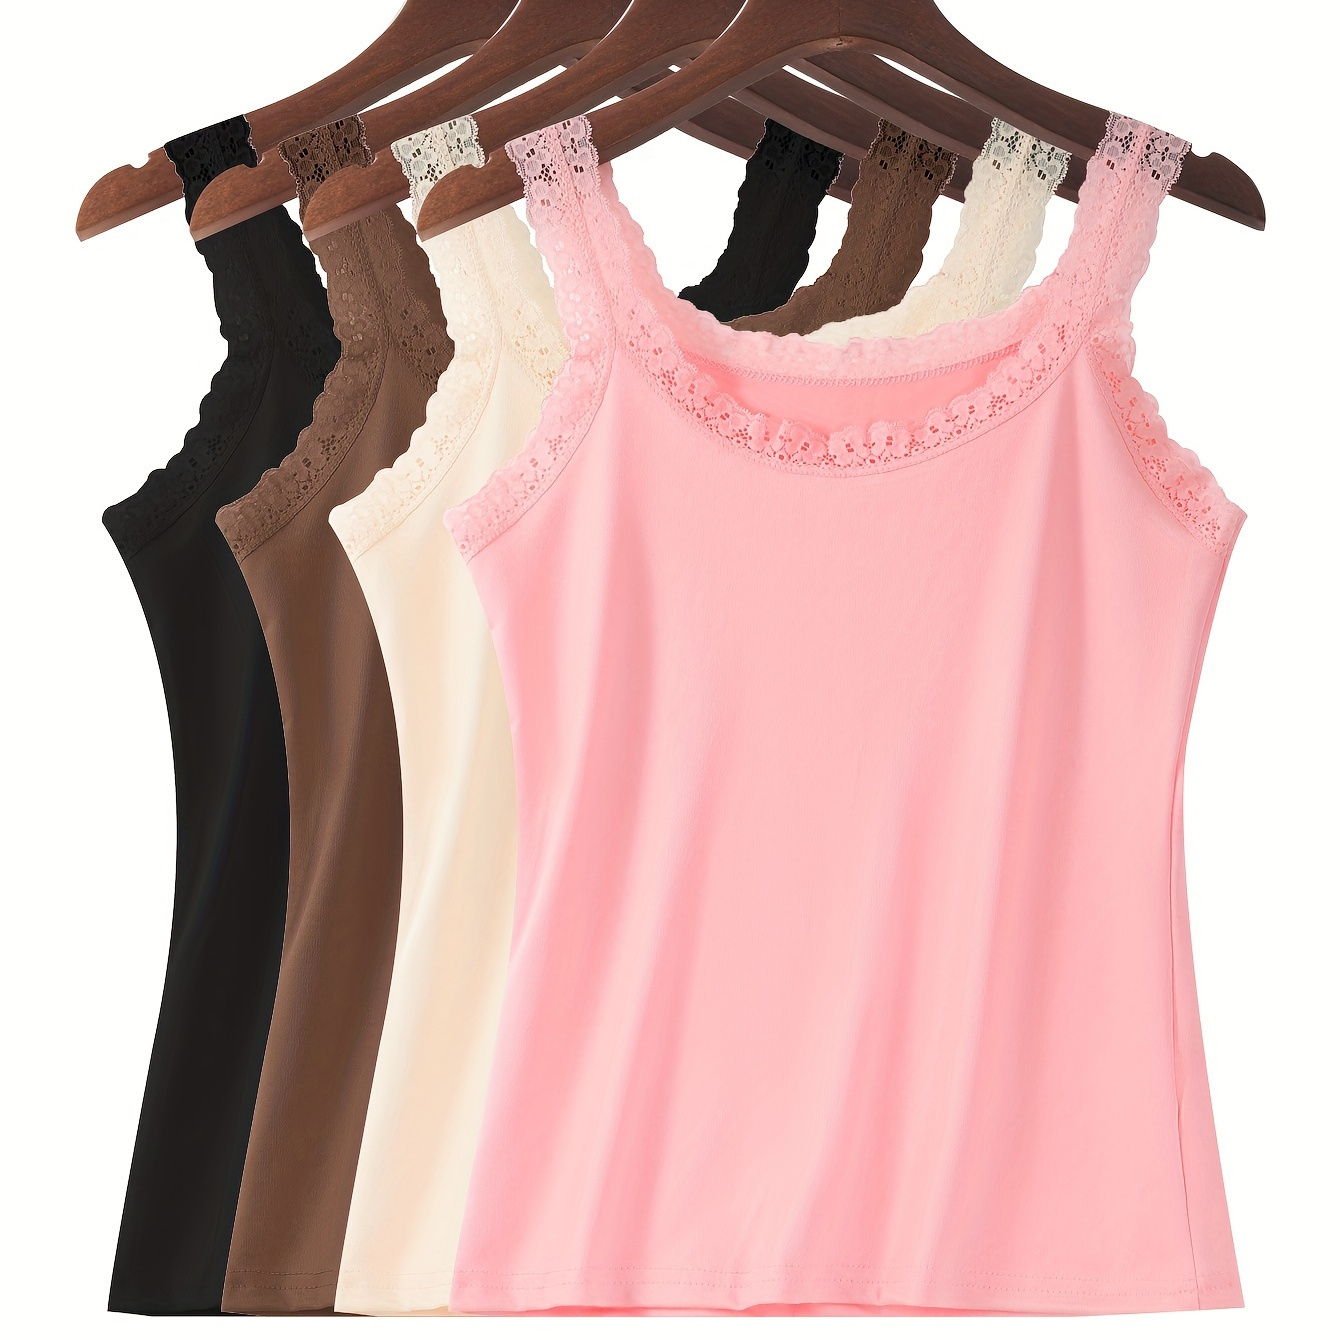 

4pcs Solid Floral Lace Trim Vest Top, Elegant Sleeveless Top, Women's Lingerie & Underwear